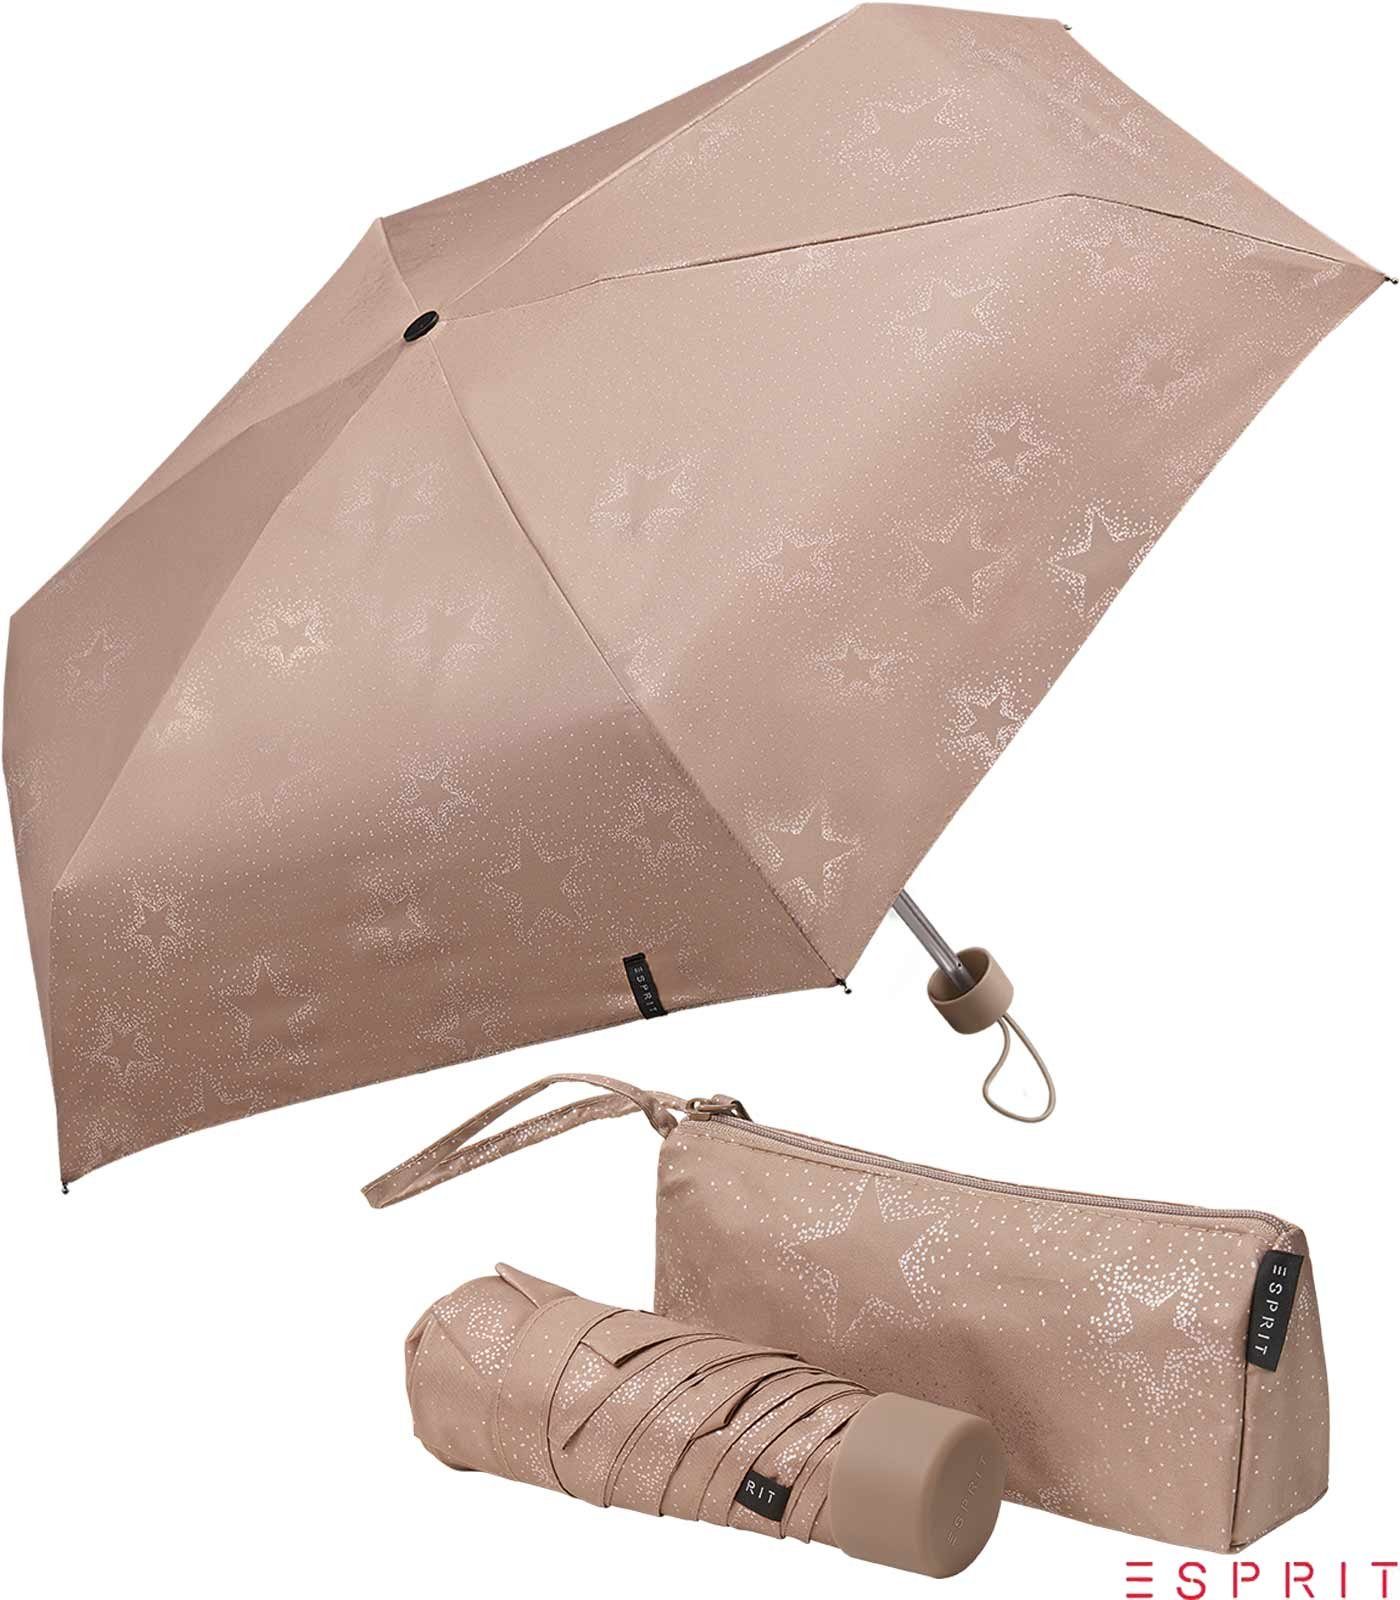 Esprit Taschenregenschirm Ultra Mini Pouch mit Tasche - Starburst - taupe gray metallic, winzig klein, in einer praktischen Tragetasche